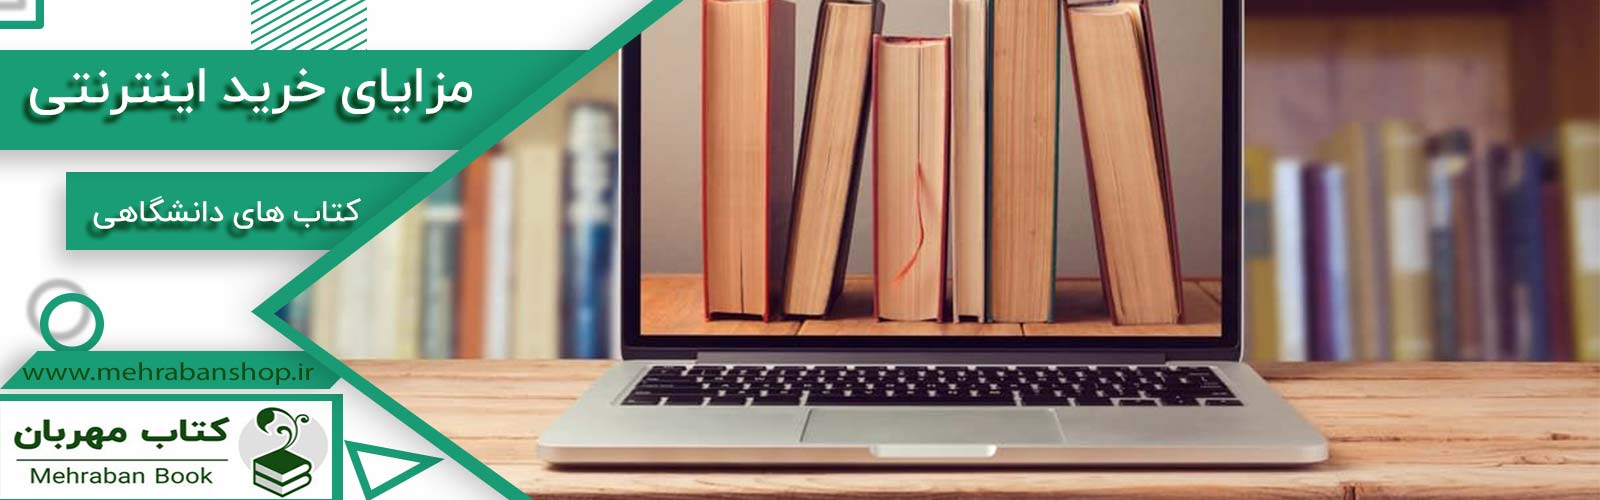 مزایای خرید اینترنتی کتاب های دانشگاهی